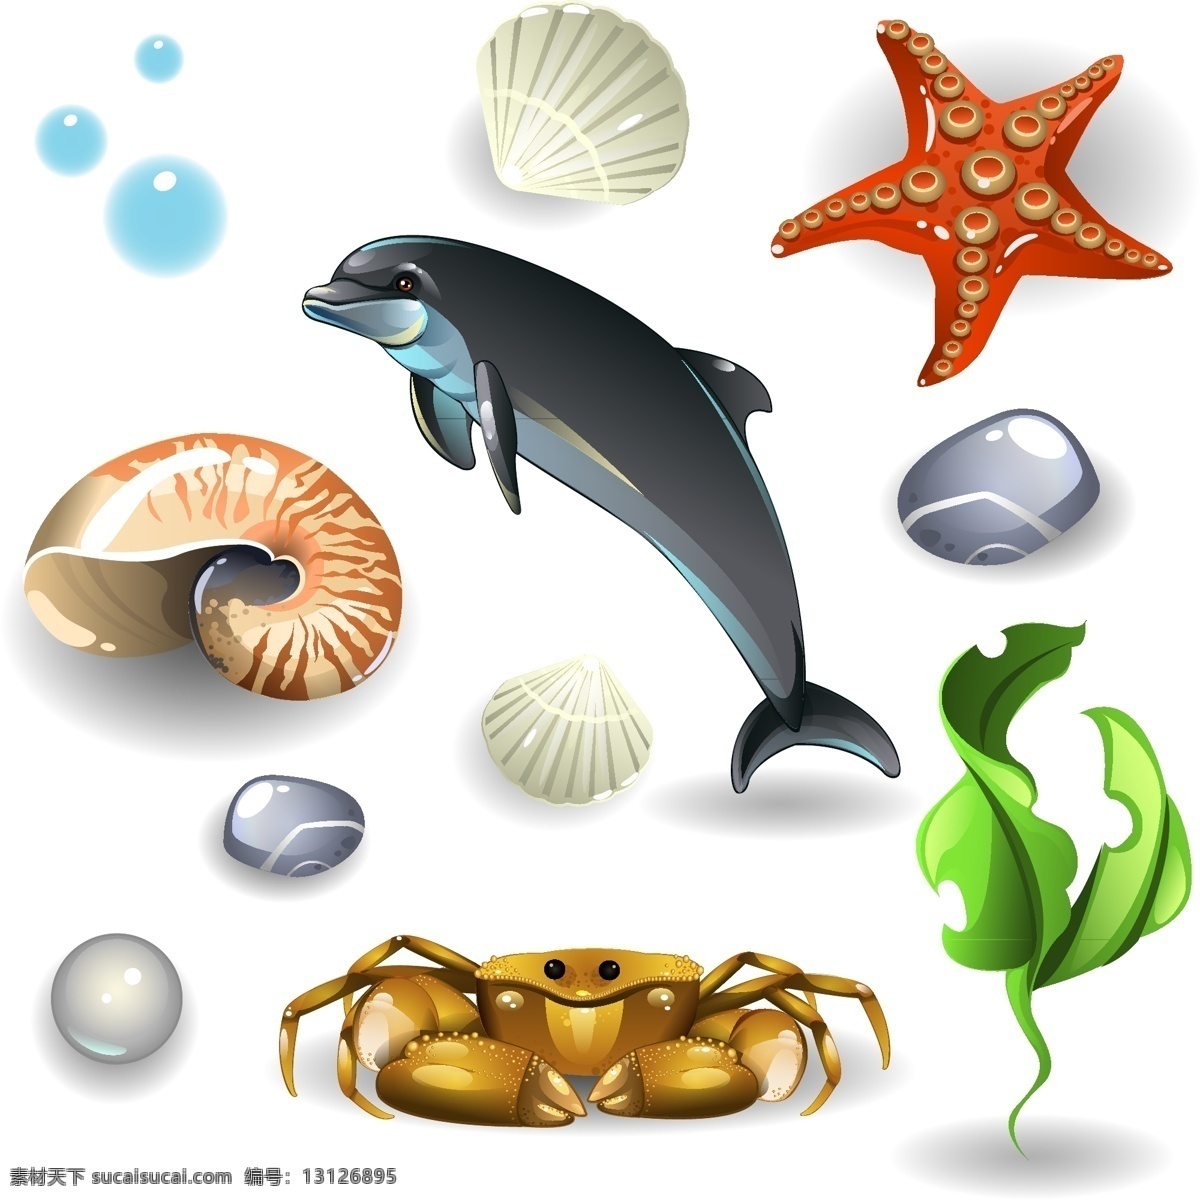 手绘 大海 生物 元素 清晰 海螺 螃蟹 水草 珍珠 海豚 海星 矢量